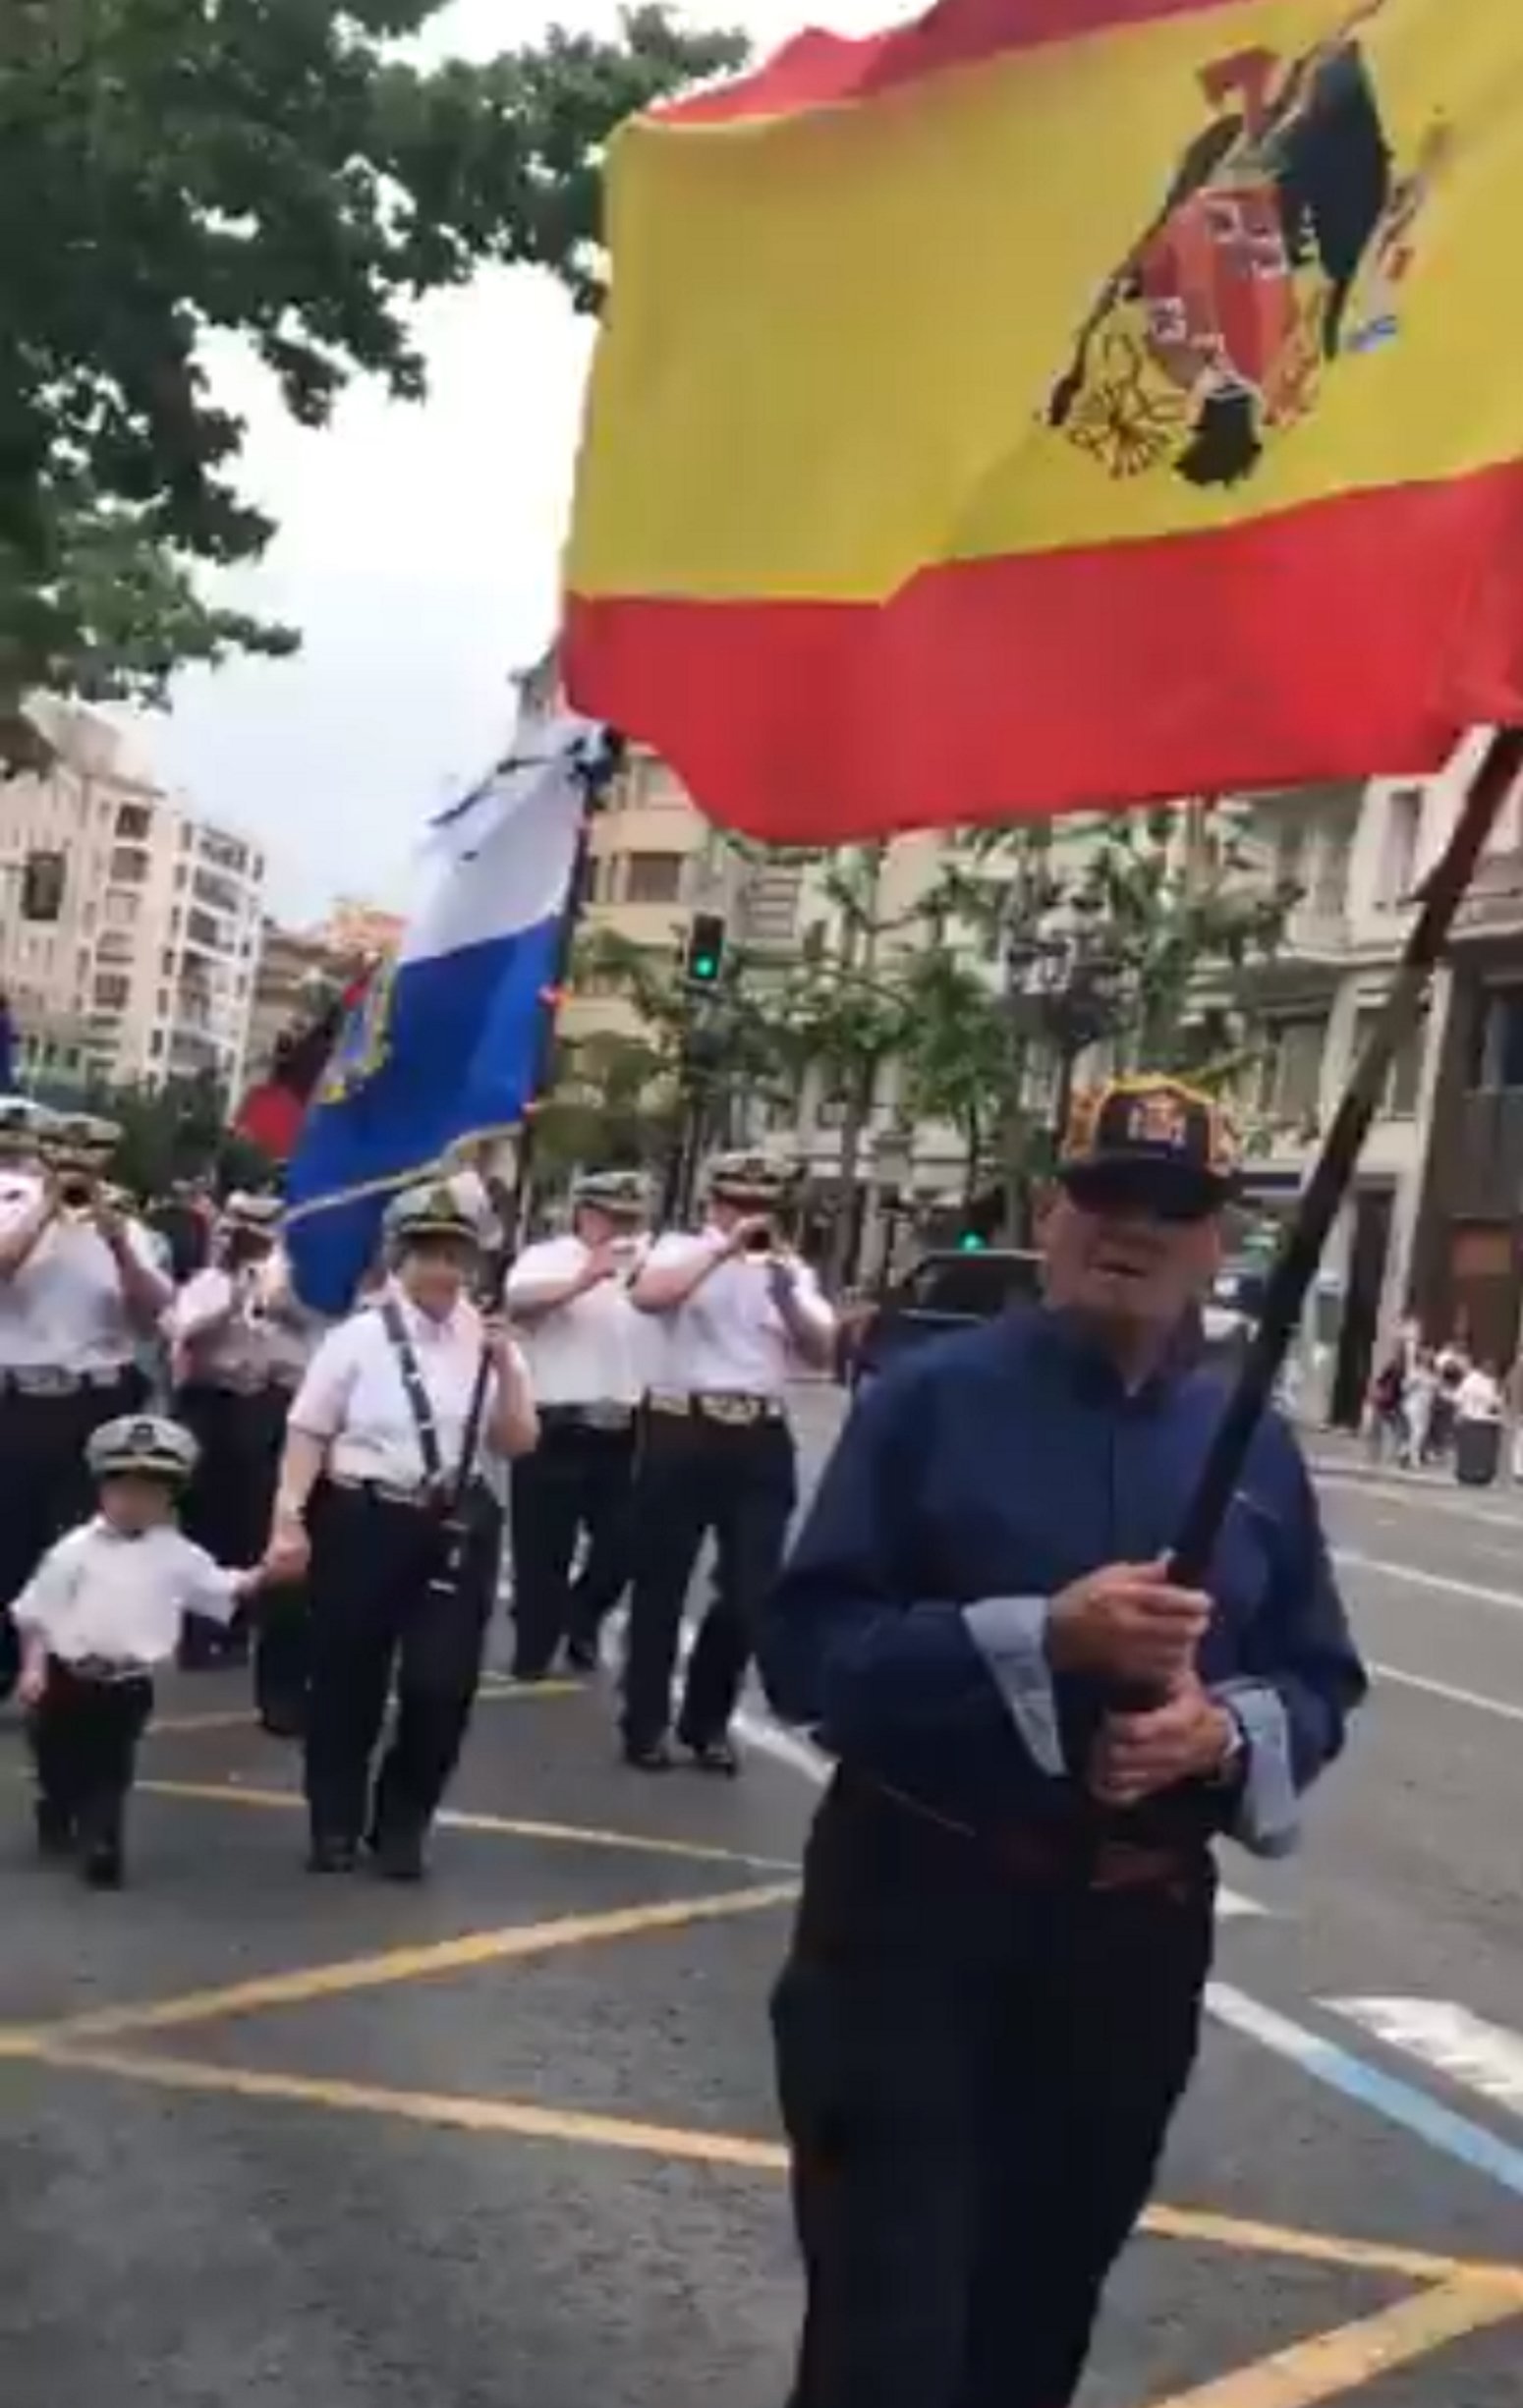 Niños desfilando entre banderas franquistas en Santander: "Adoctrinamiento"